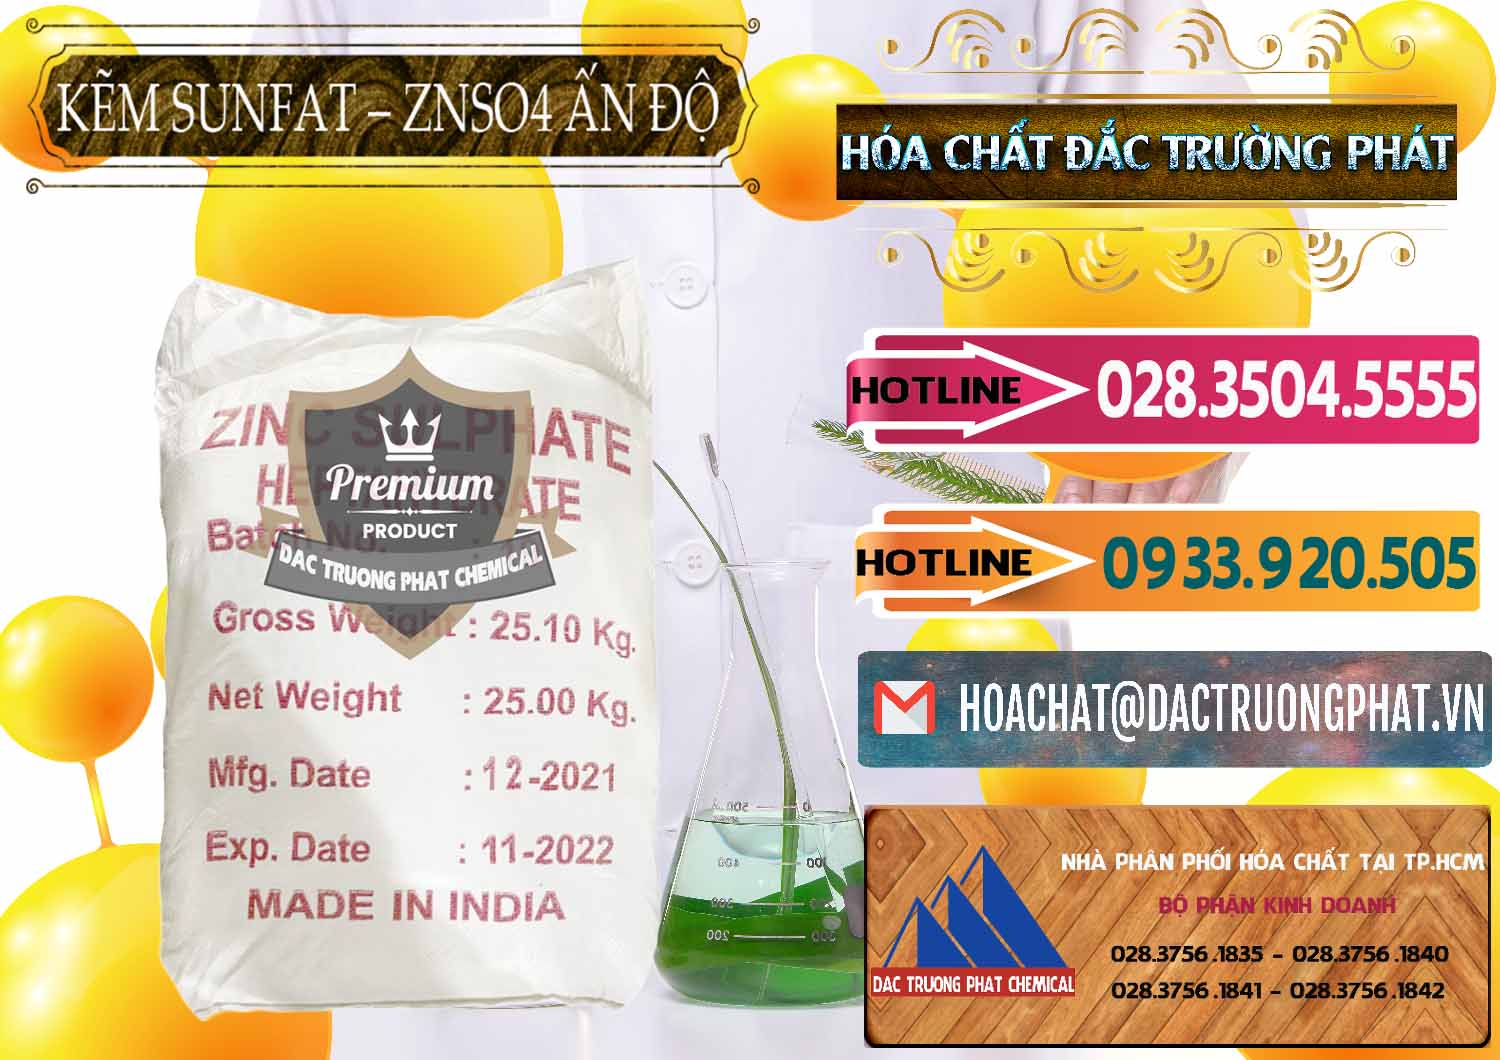 Nơi cung ứng _ bán Kẽm Sunfat – ZNSO4.7H2O Ấn Độ India - 0417 - Nhập khẩu và phân phối hóa chất tại TP.HCM - dactruongphat.vn